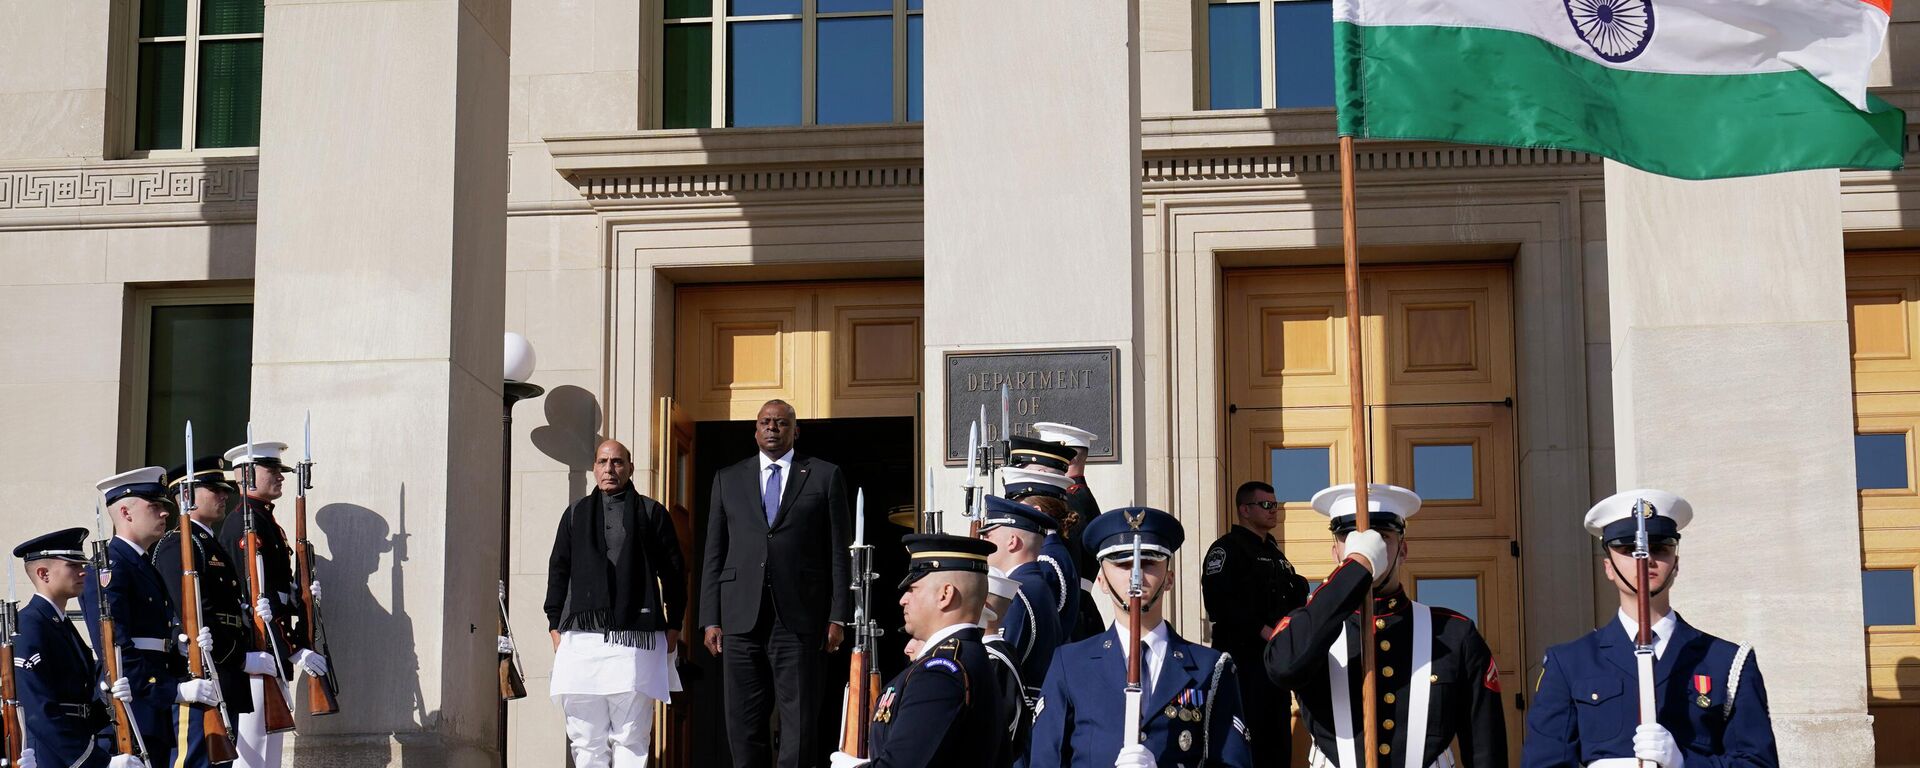 Rajnath Singh, ministro da Defesa da Índia (à esquerda), e Lloyd Austin, secretário da Defesa dos EUA (à direita), durante cerimônia de chegada ao Pentágono em Washington, EUA, 11 de abril de 2022 - Sputnik Brasil, 1920, 21.04.2022